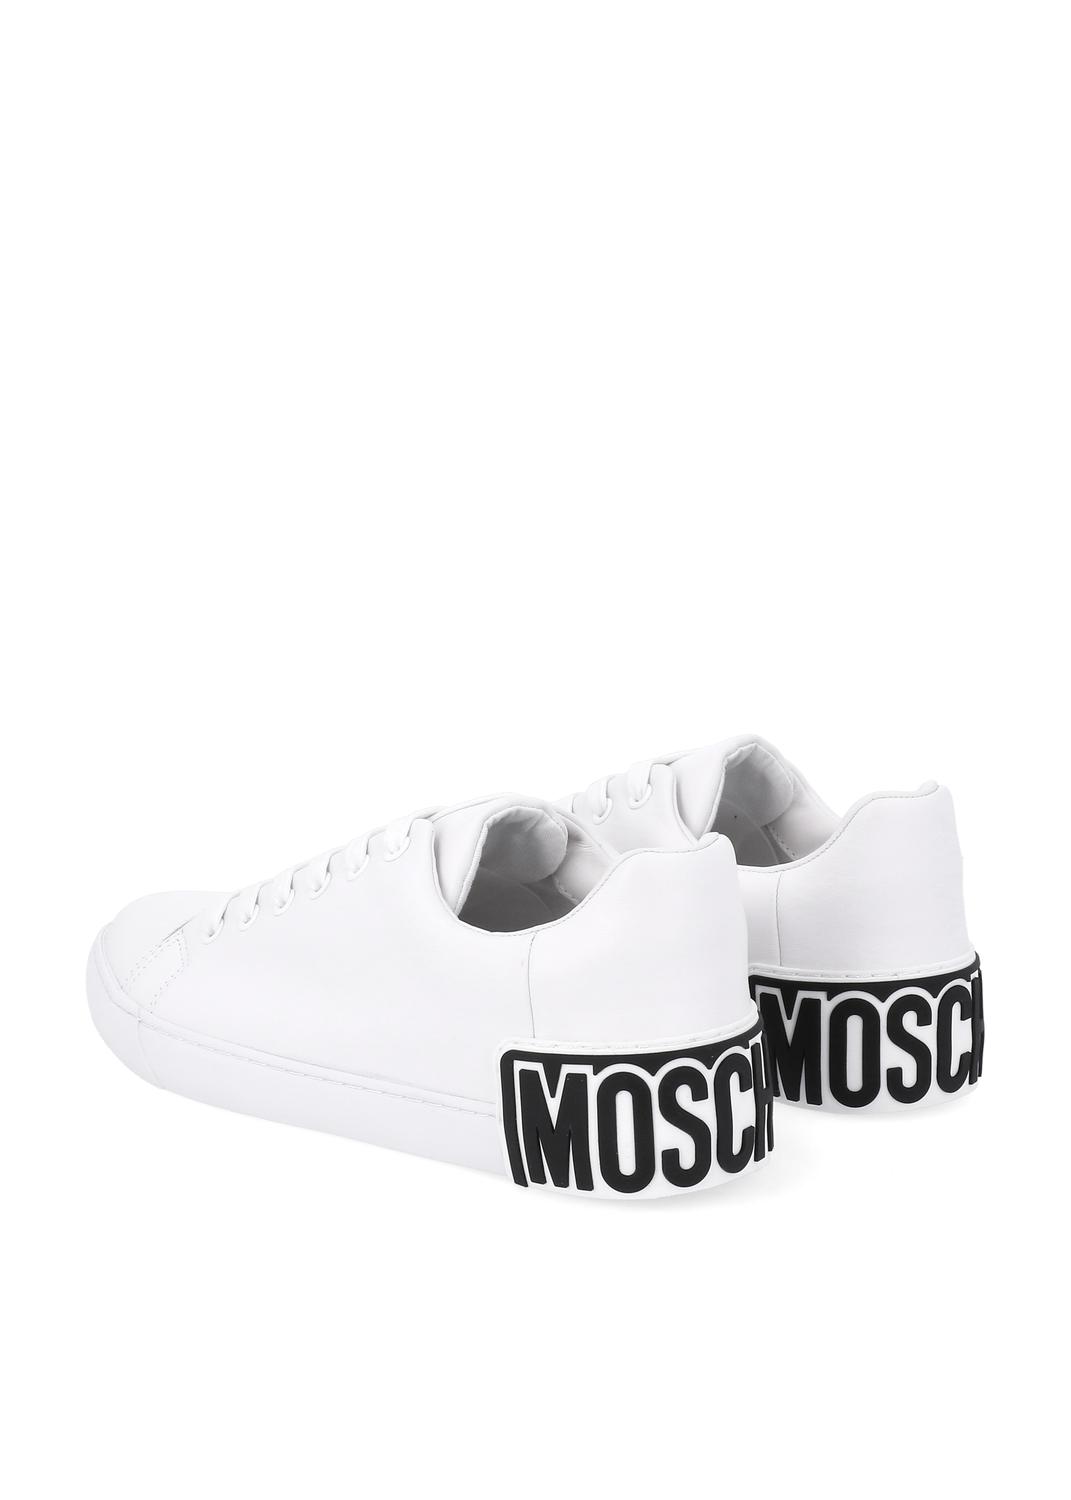 Moschino sneakers con parche de logo para hombre MSC-MB15402